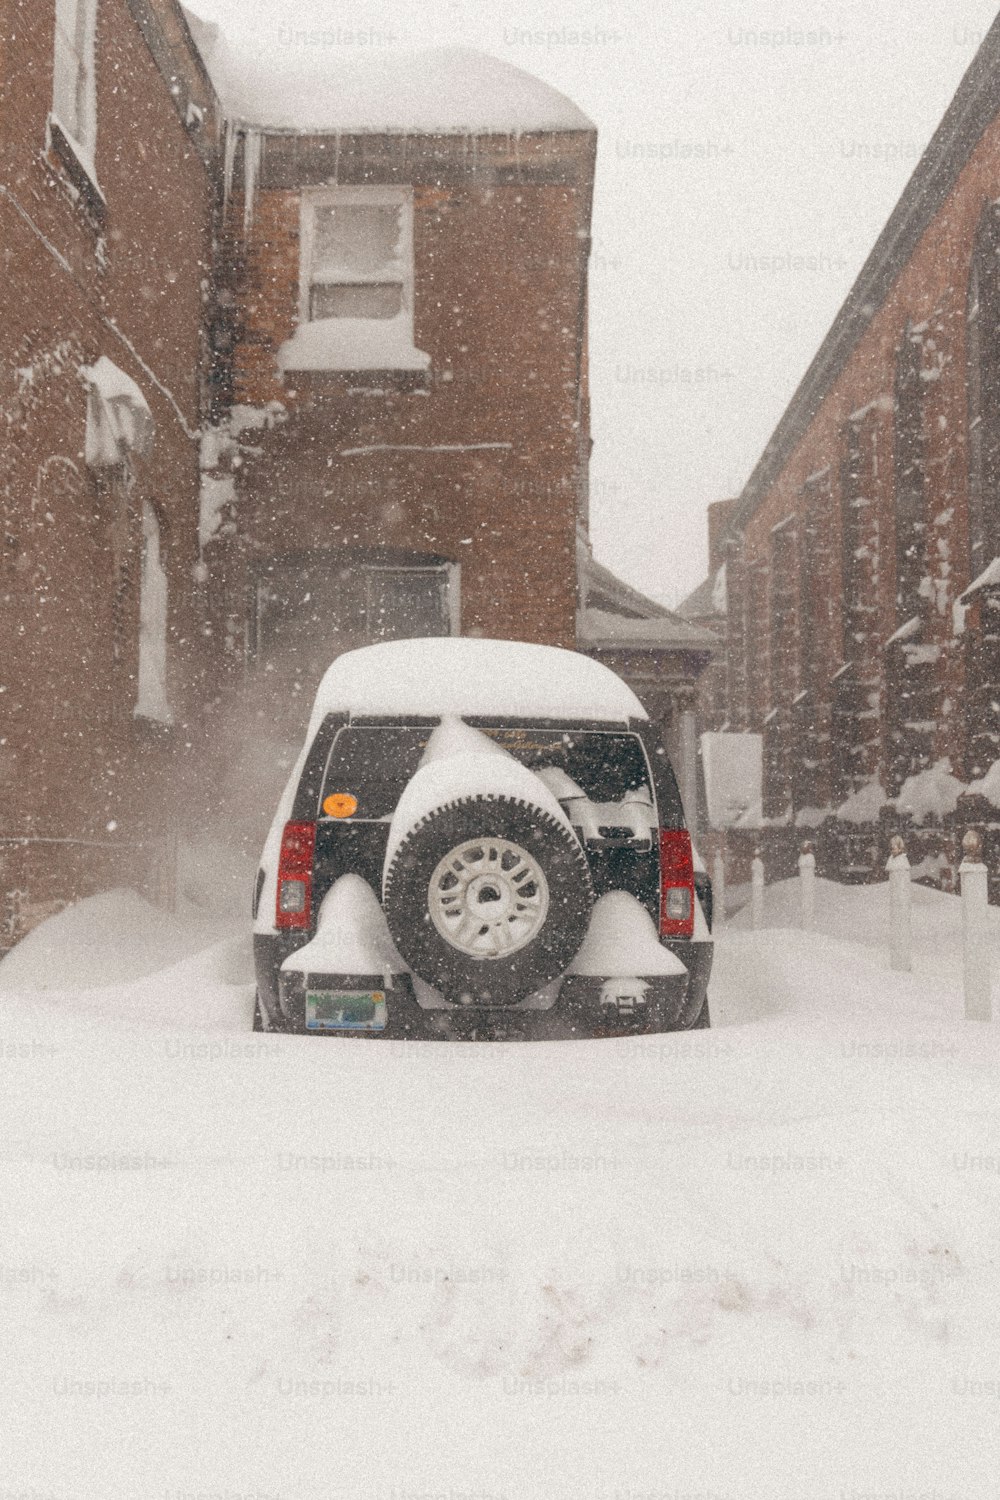 Un camión está estacionado en una calle nevada